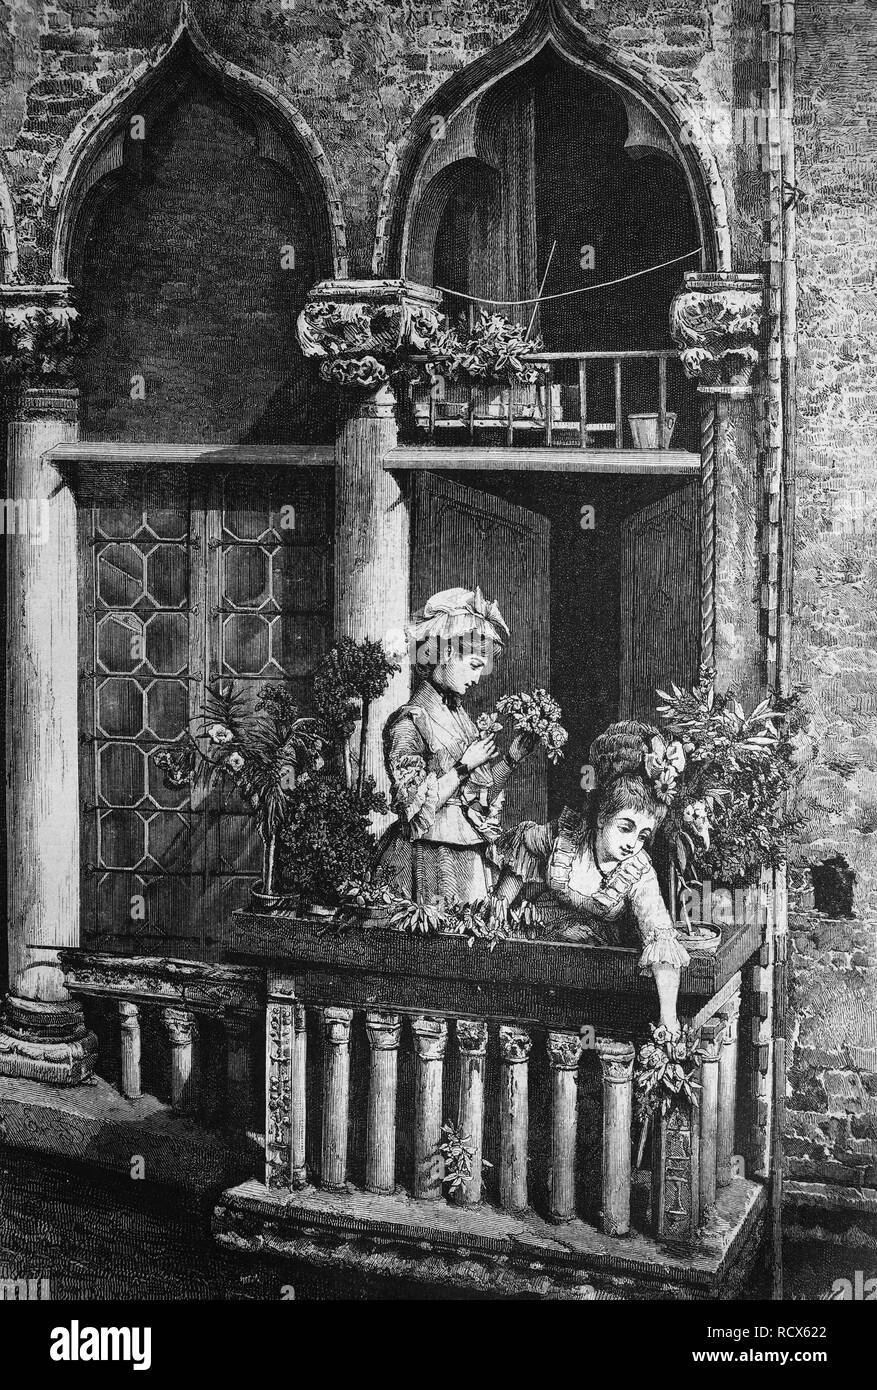 Balcone veneziano, Italia, incisione su legno, c 1880 Foto Stock